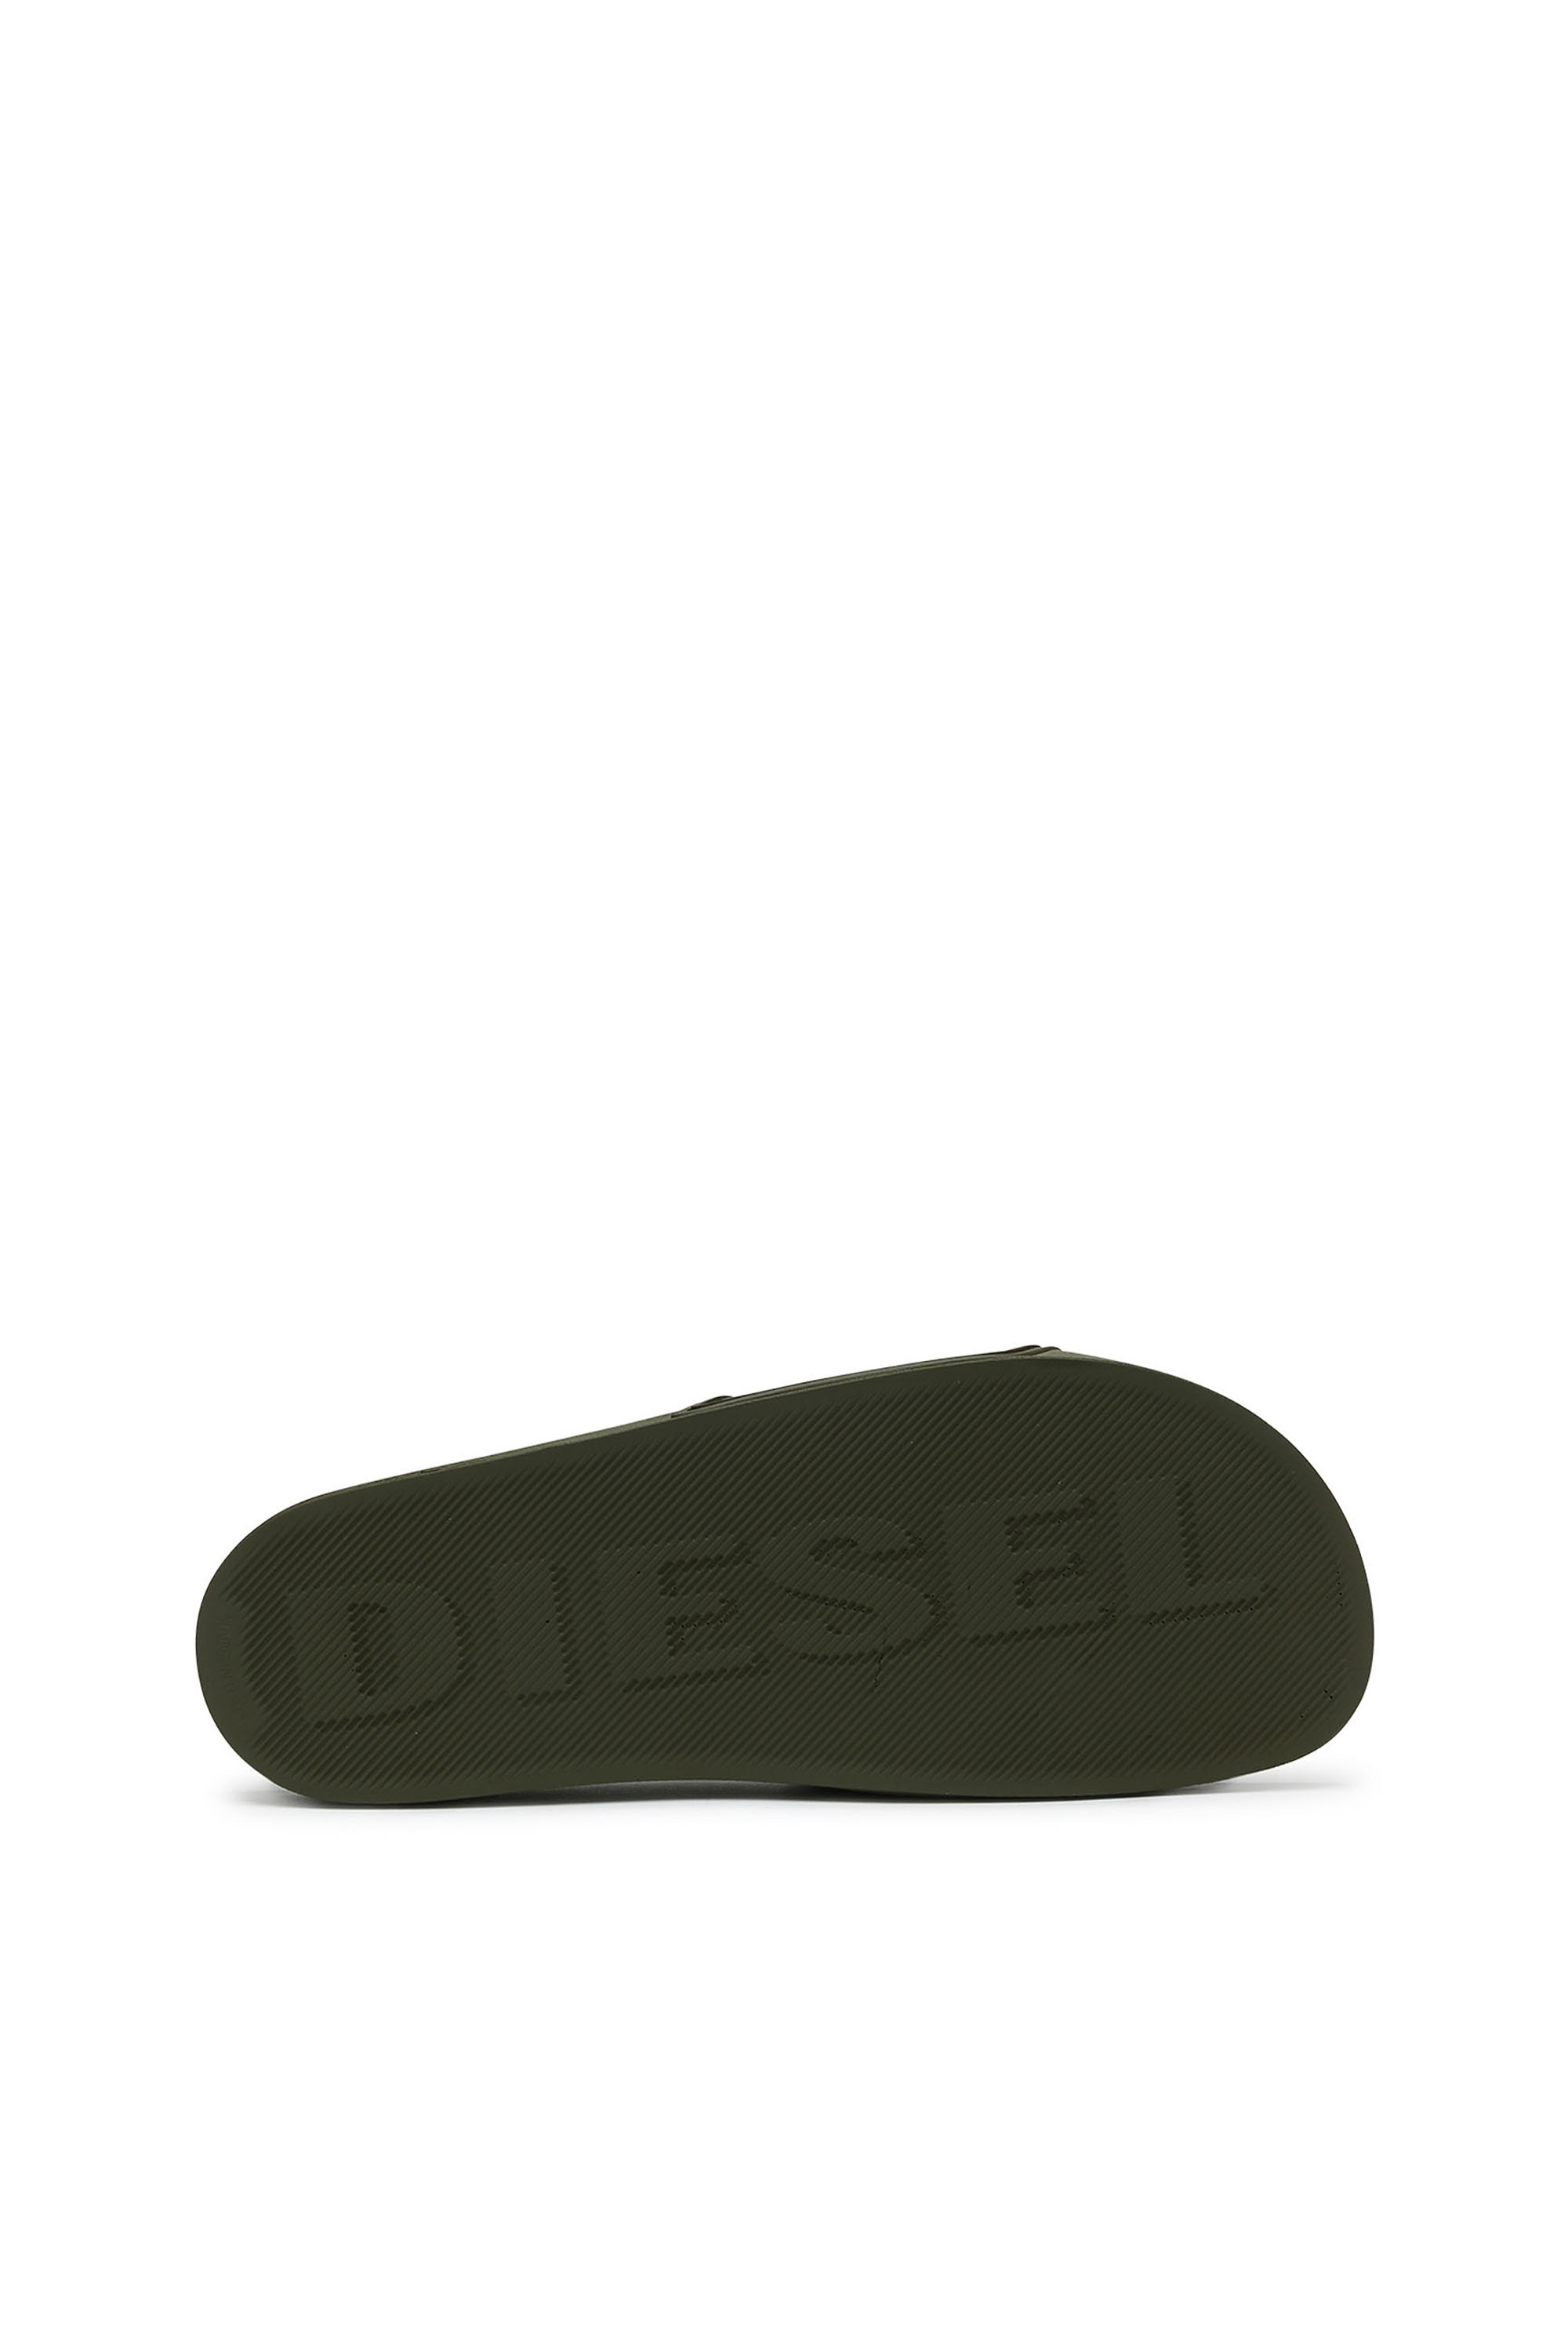 Diesel - SA-MAYEMI CC, Olive Green - Image 4